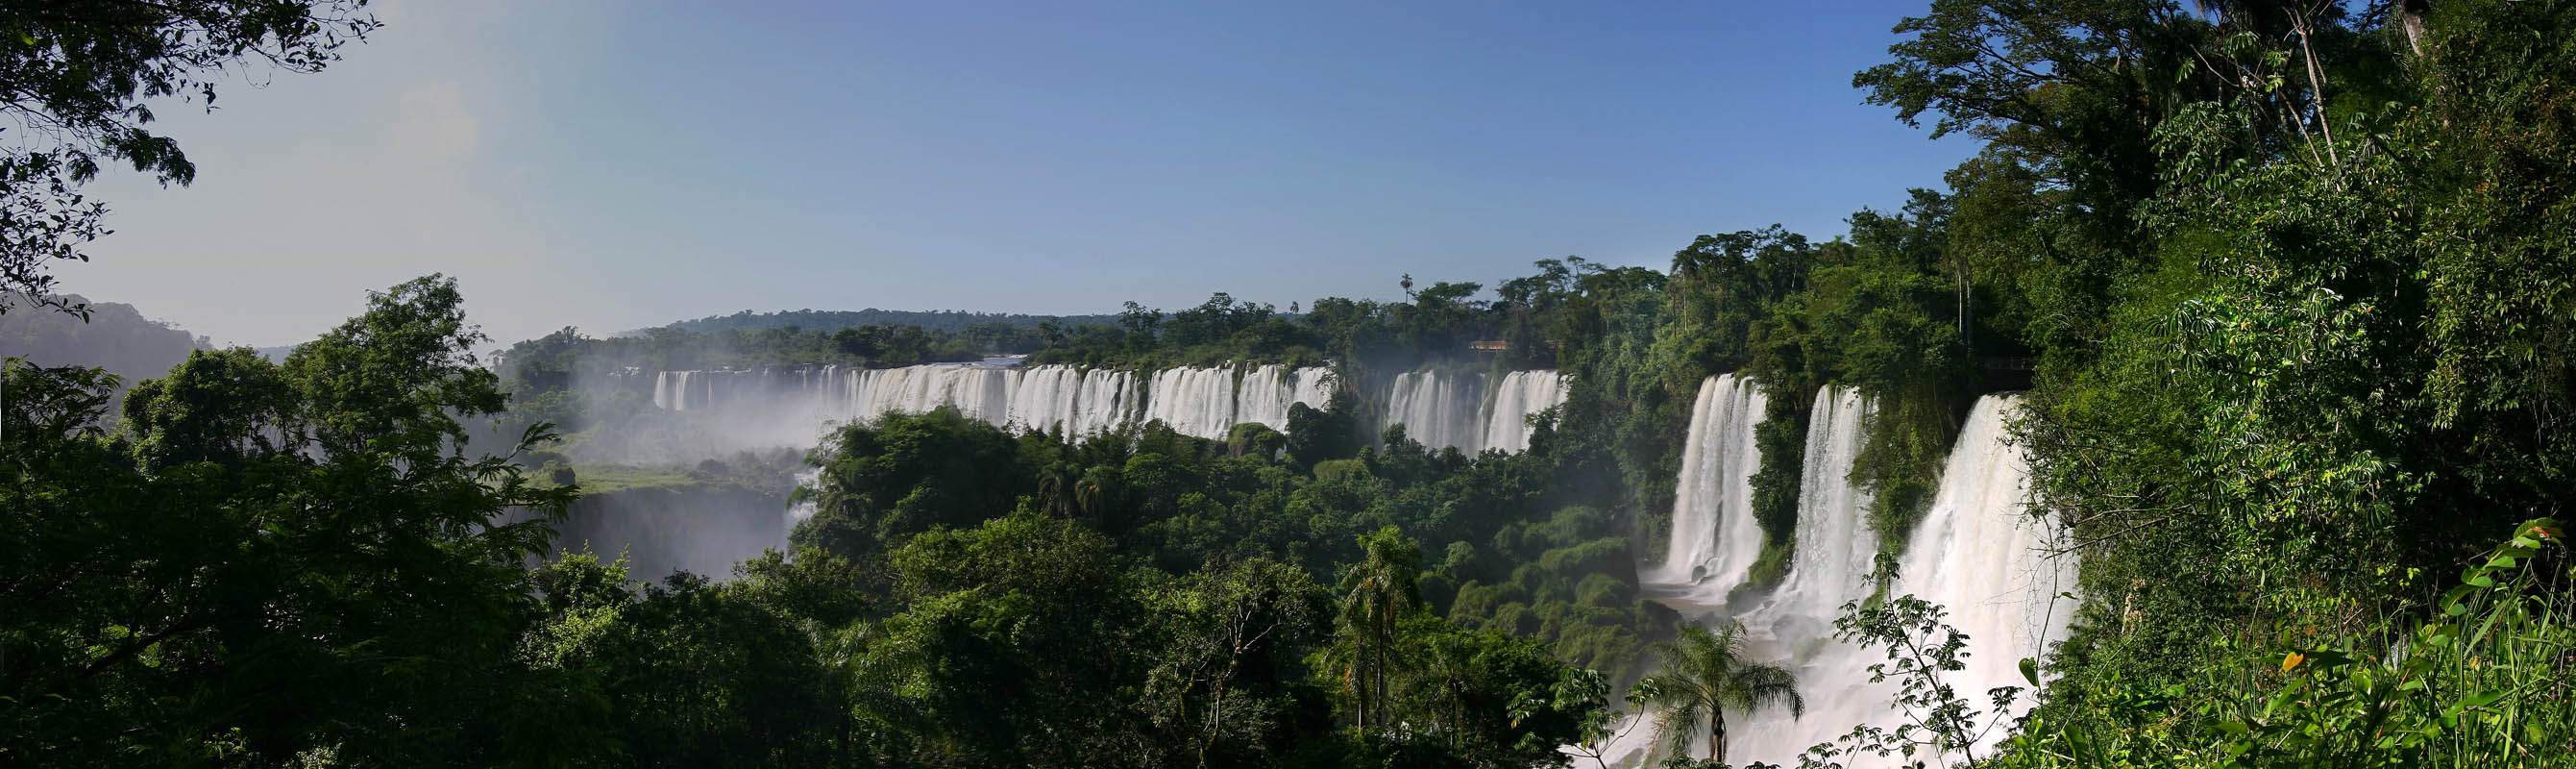 Iguaz Falls